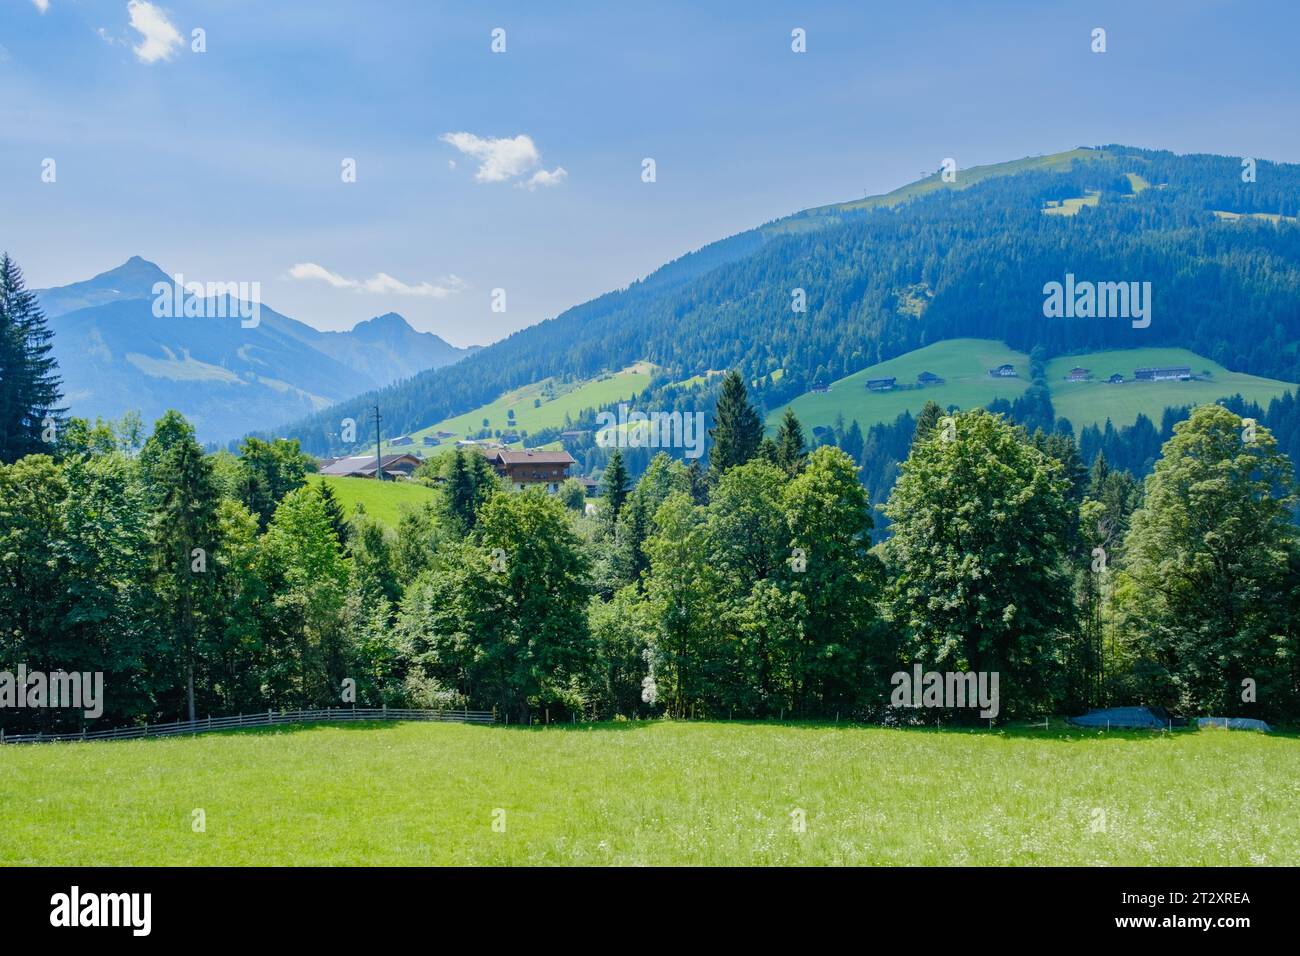 Eine Reihe von Bäumen, üppig grüne Felder mit Häusern, sanfte Hügel und Berge. Alpbach, Tirol, Österreich. Stockfoto